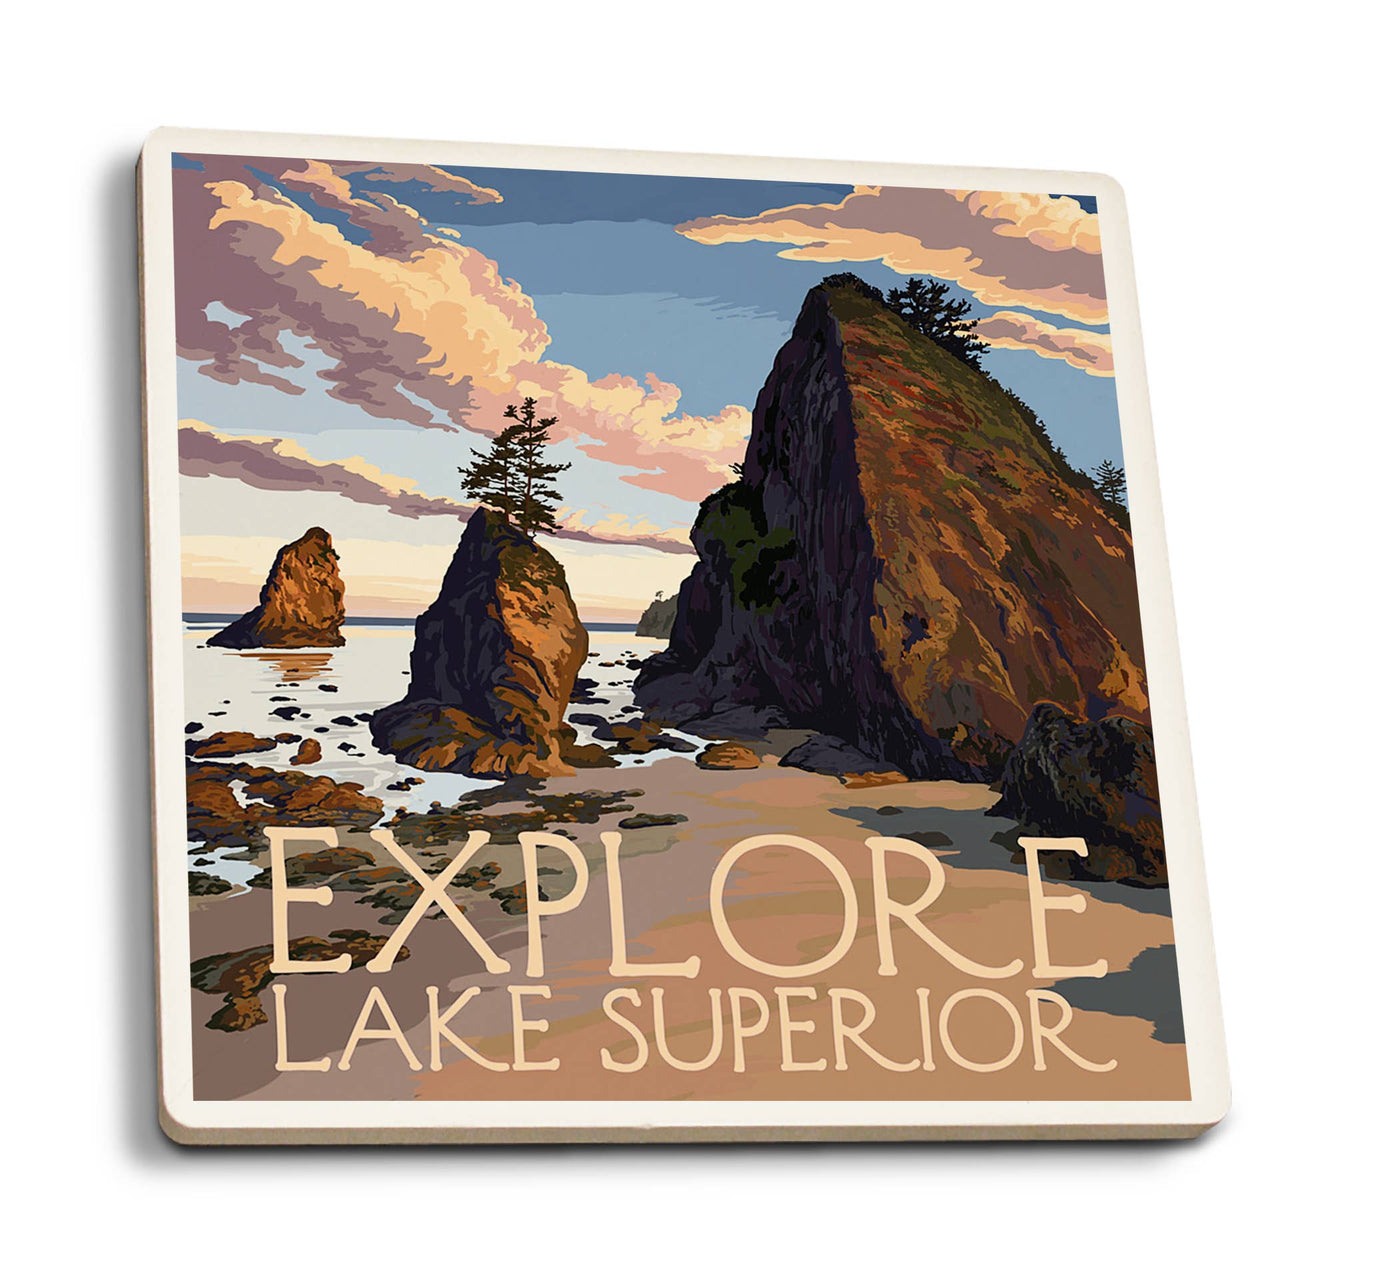 Explore Lake Superior - Ceramic Coaster